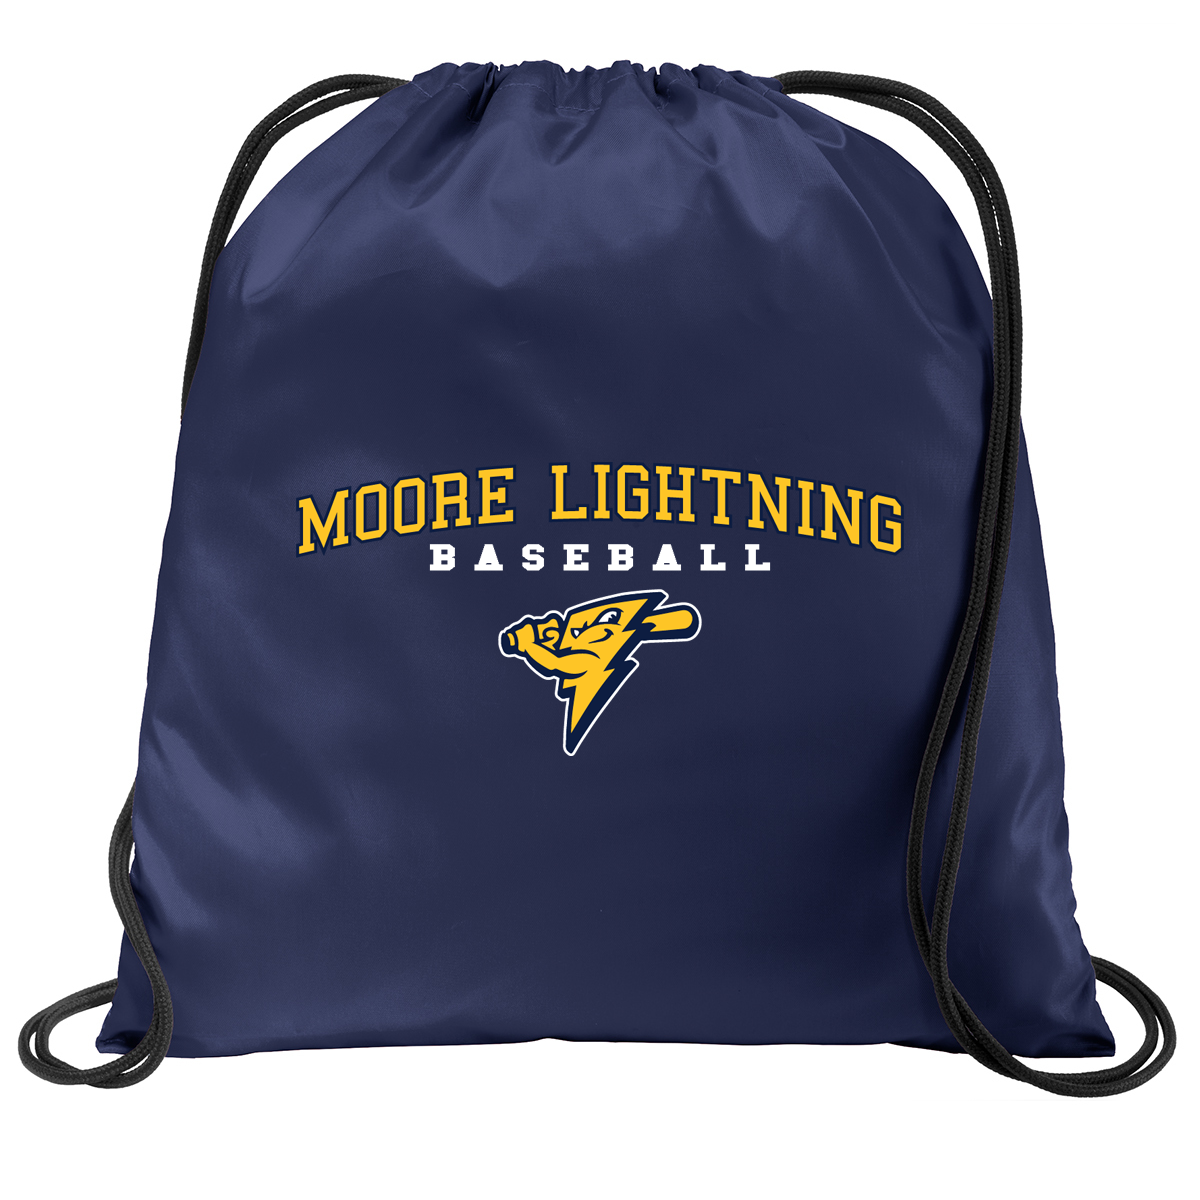 Moore Lightning Baseball  Cinch Pack